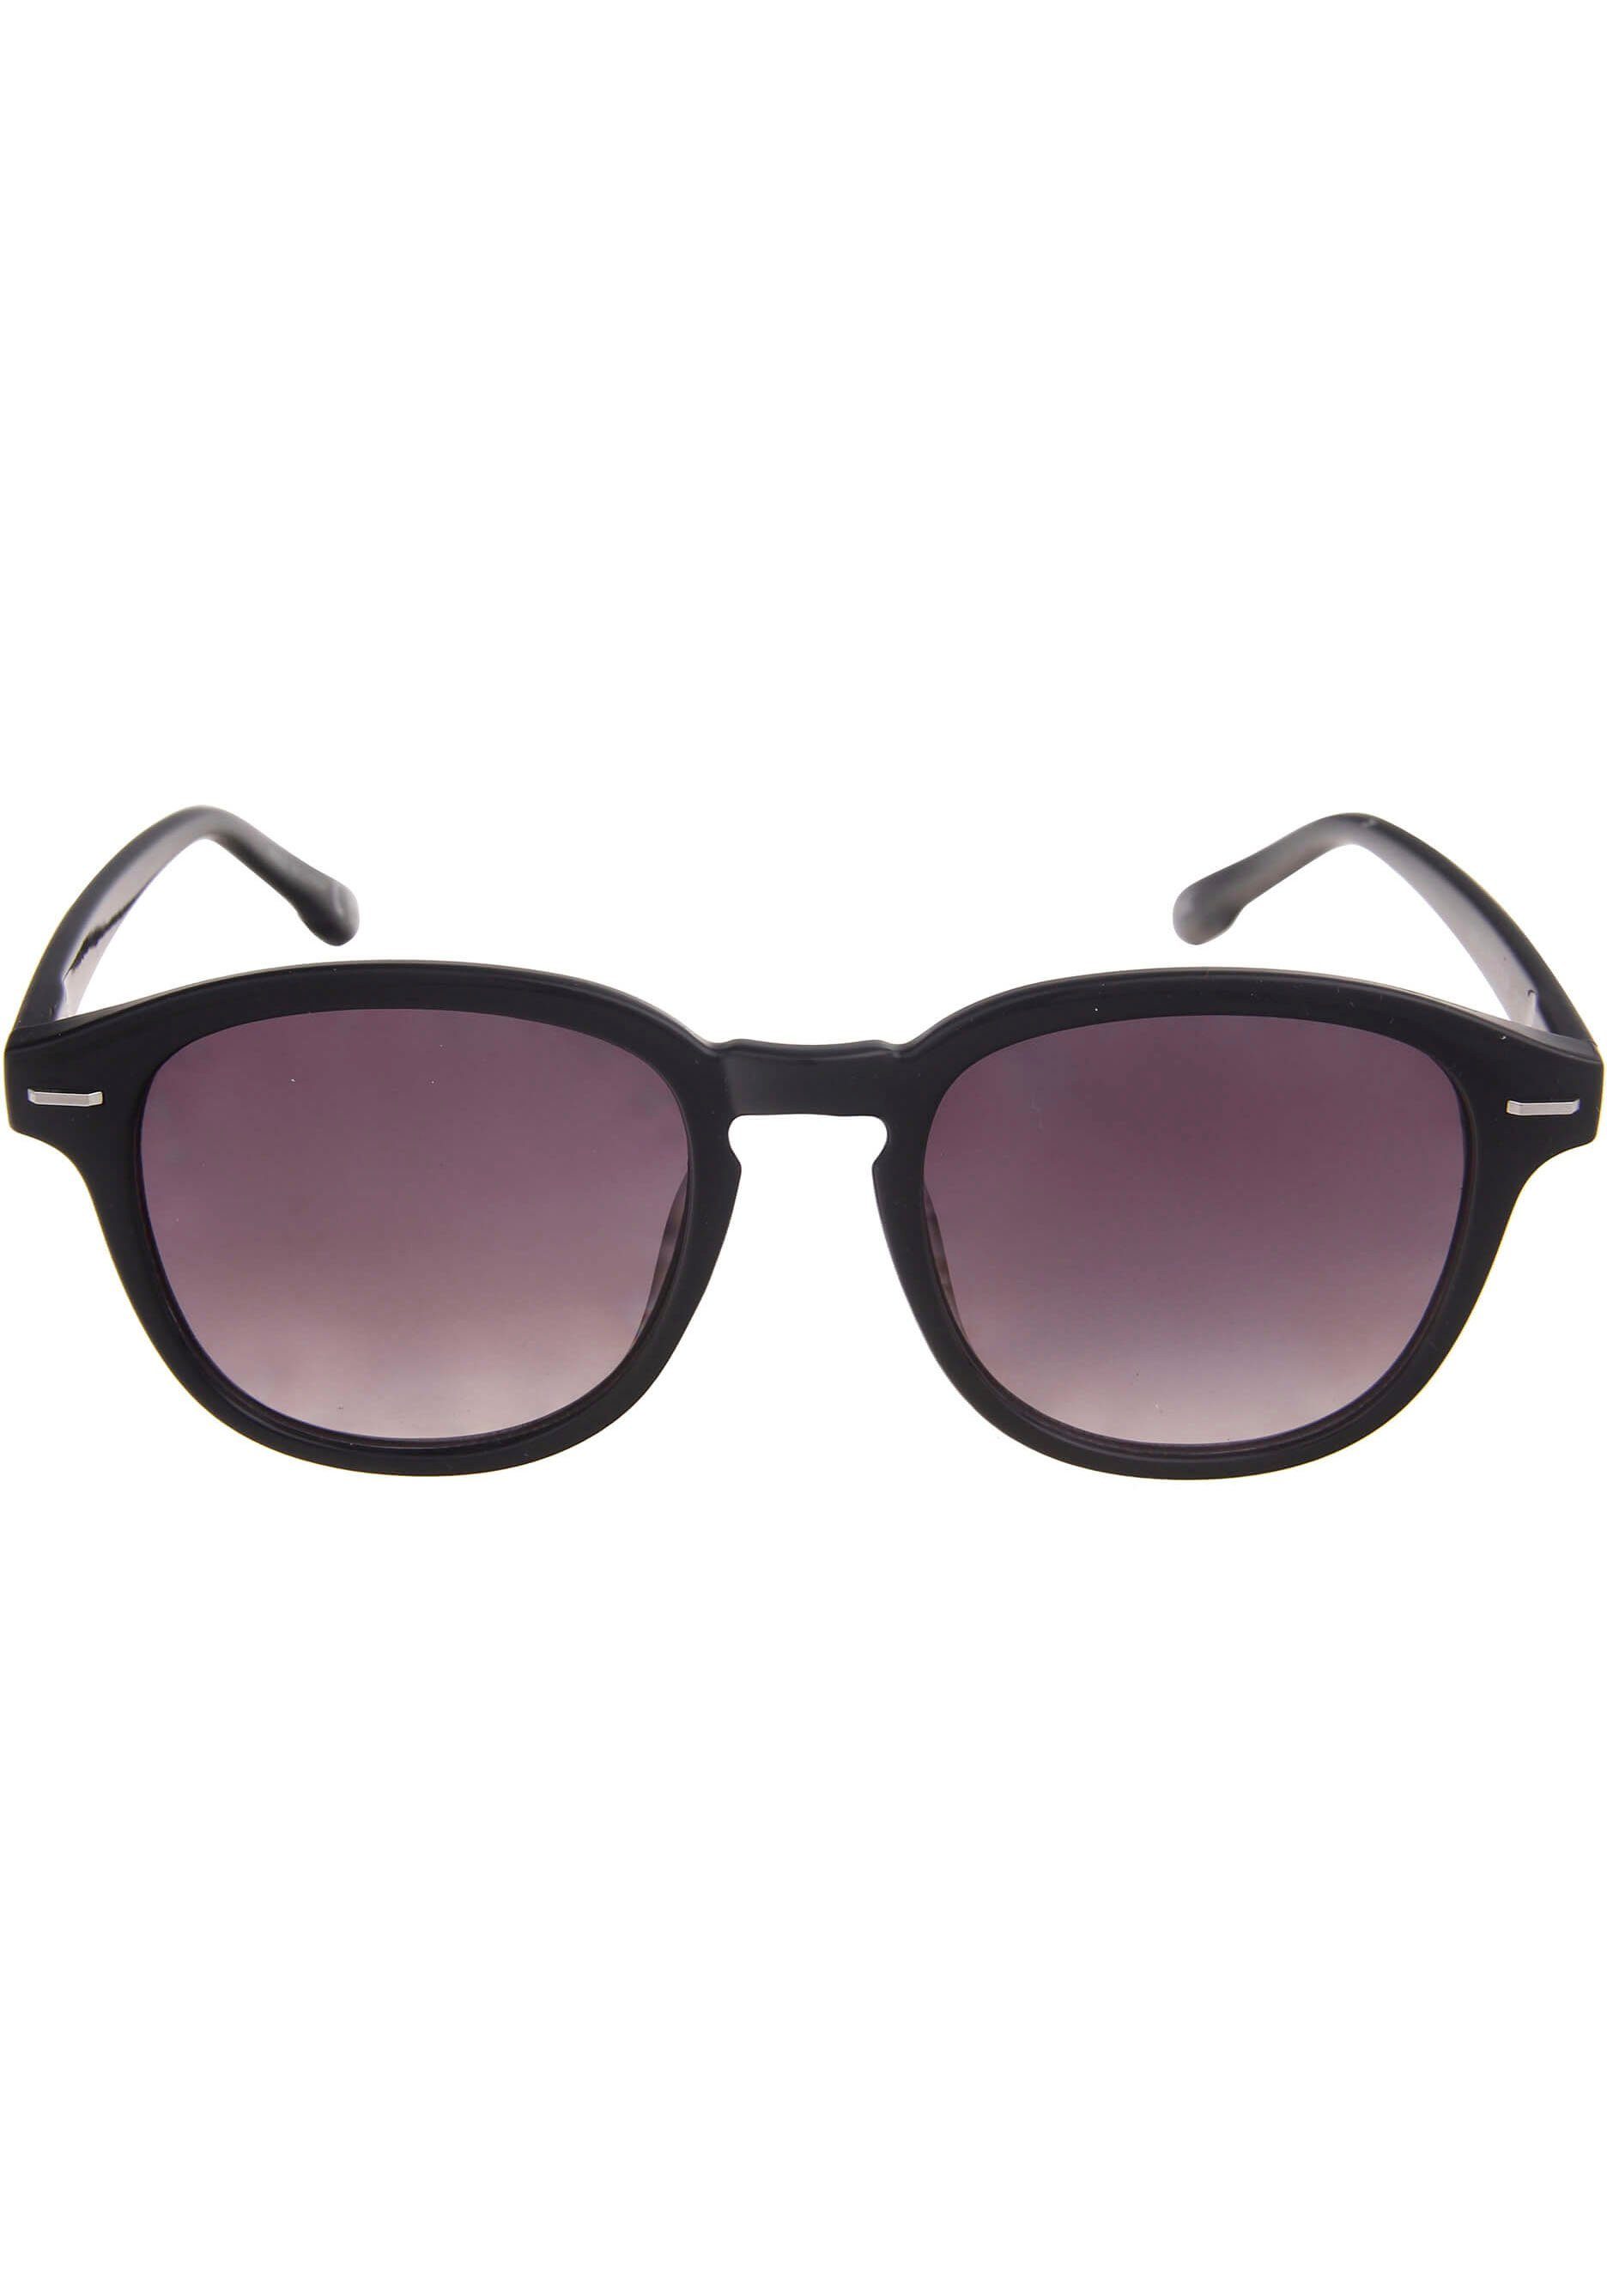 leslii Sonnenbrille braun-schwarz | Sonnenbrillen